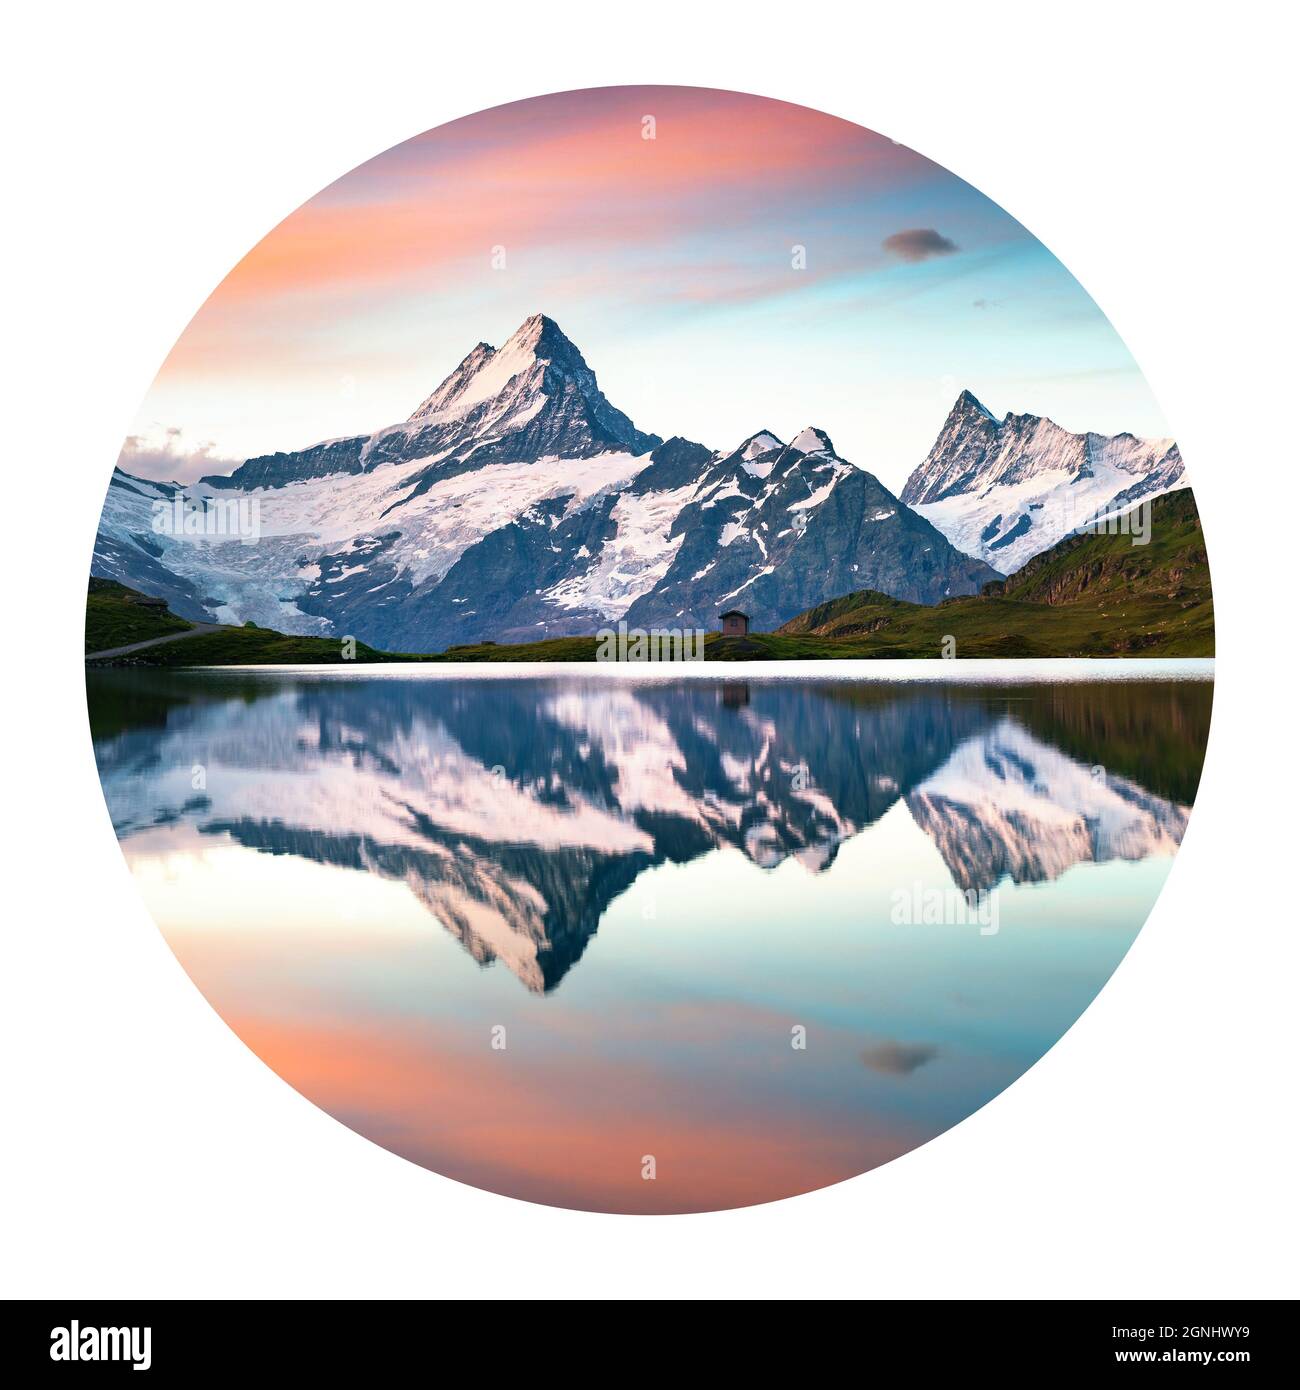 Icona rotonda della natura con un paesaggio. La vetta del Wetterhorn si riflette nella superficie acquatica del lago di Bachsee, nelle Alpi dell'Oberland Bernese, nella località di Grindelwald, in Svizzera Foto Stock